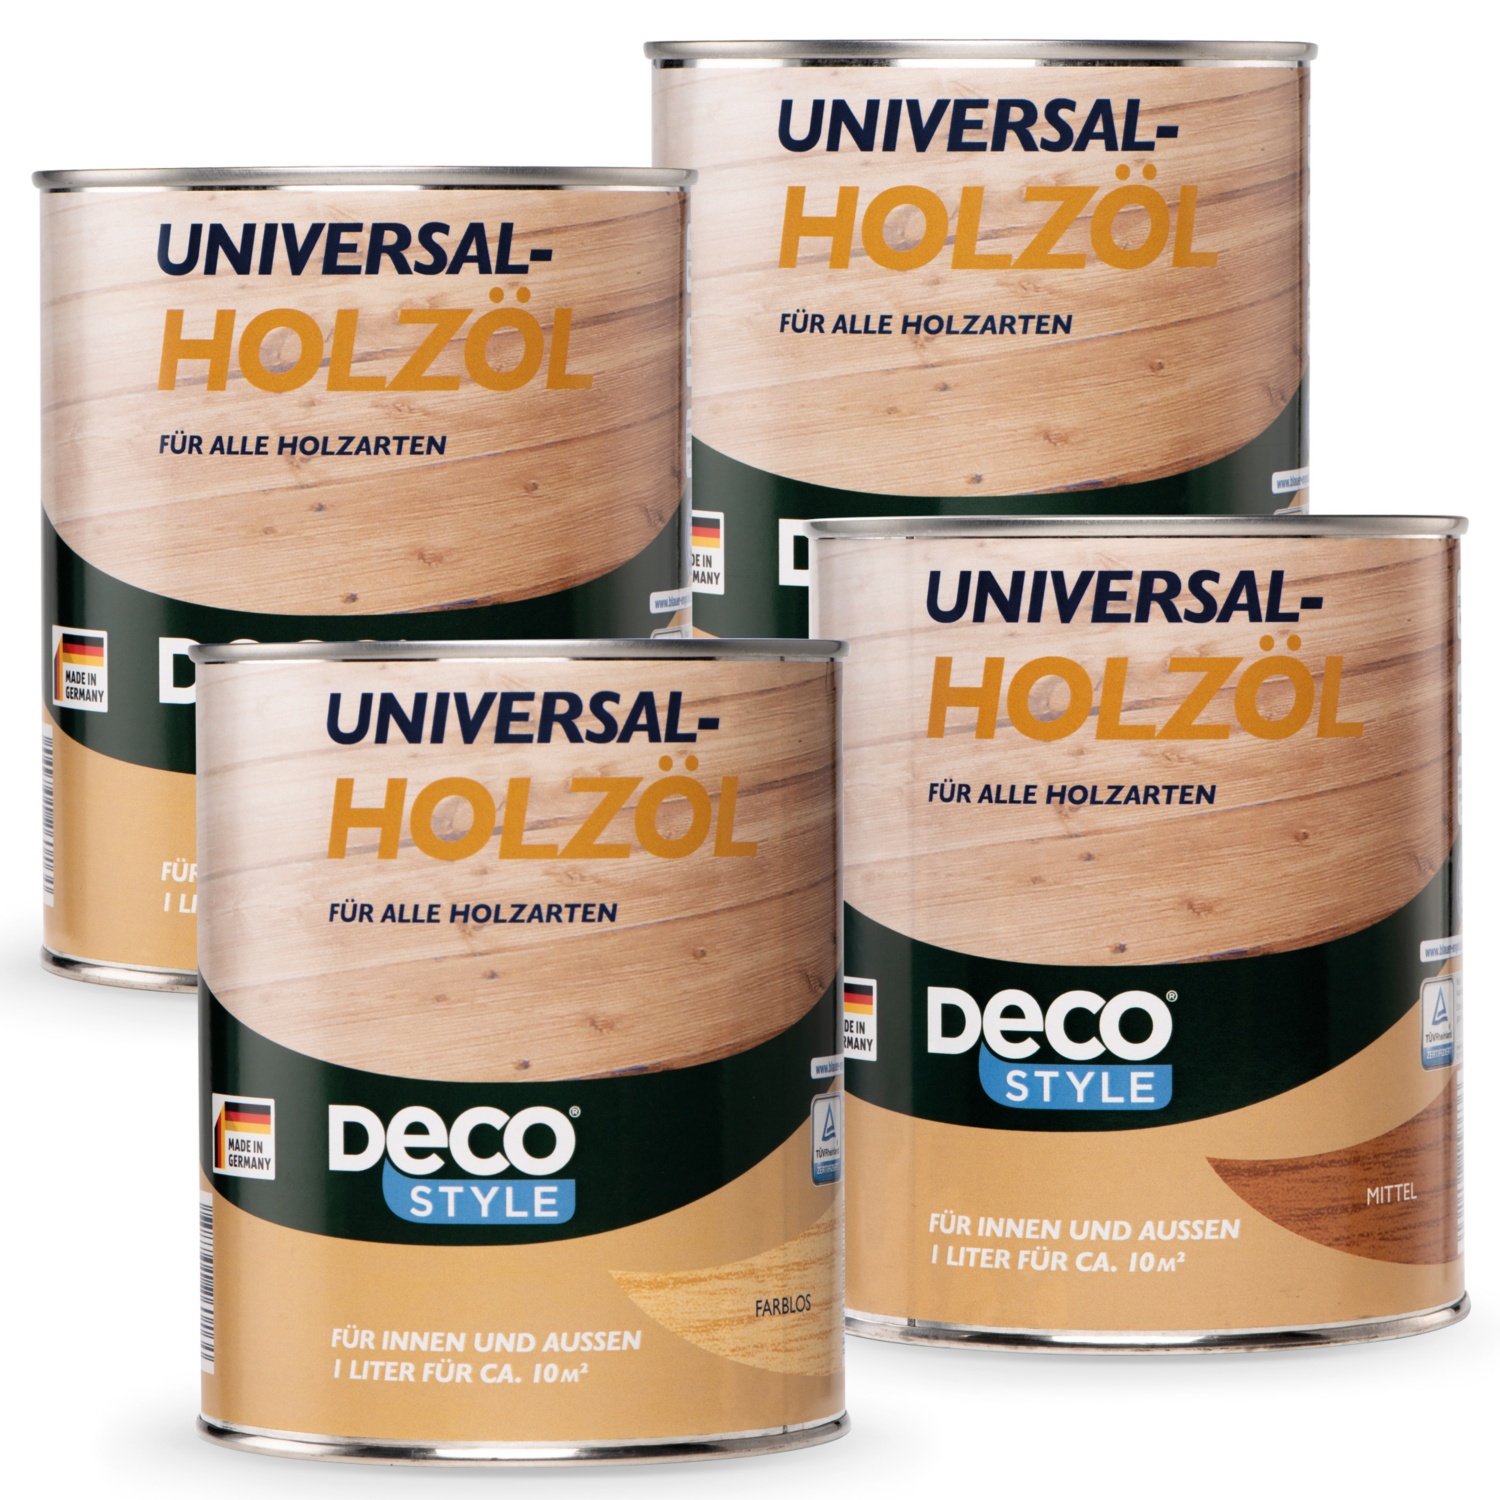 DECO STYLE Universal-Holzöl